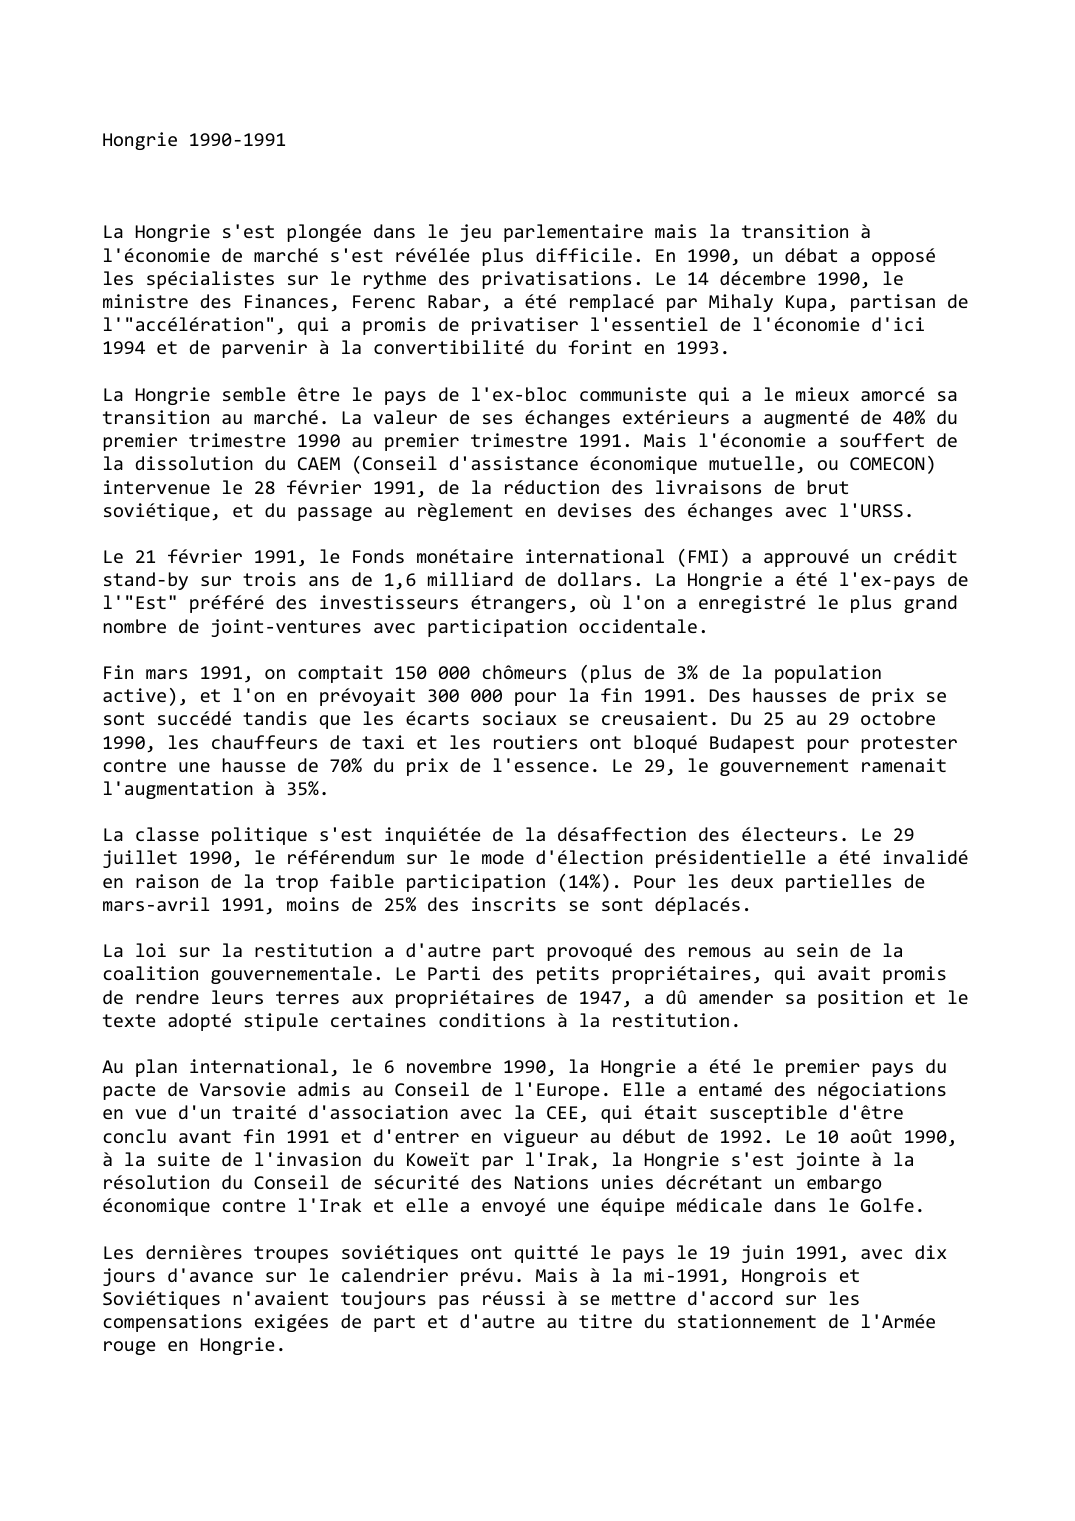 Prévisualisation du document Hongrie (1990-1991)